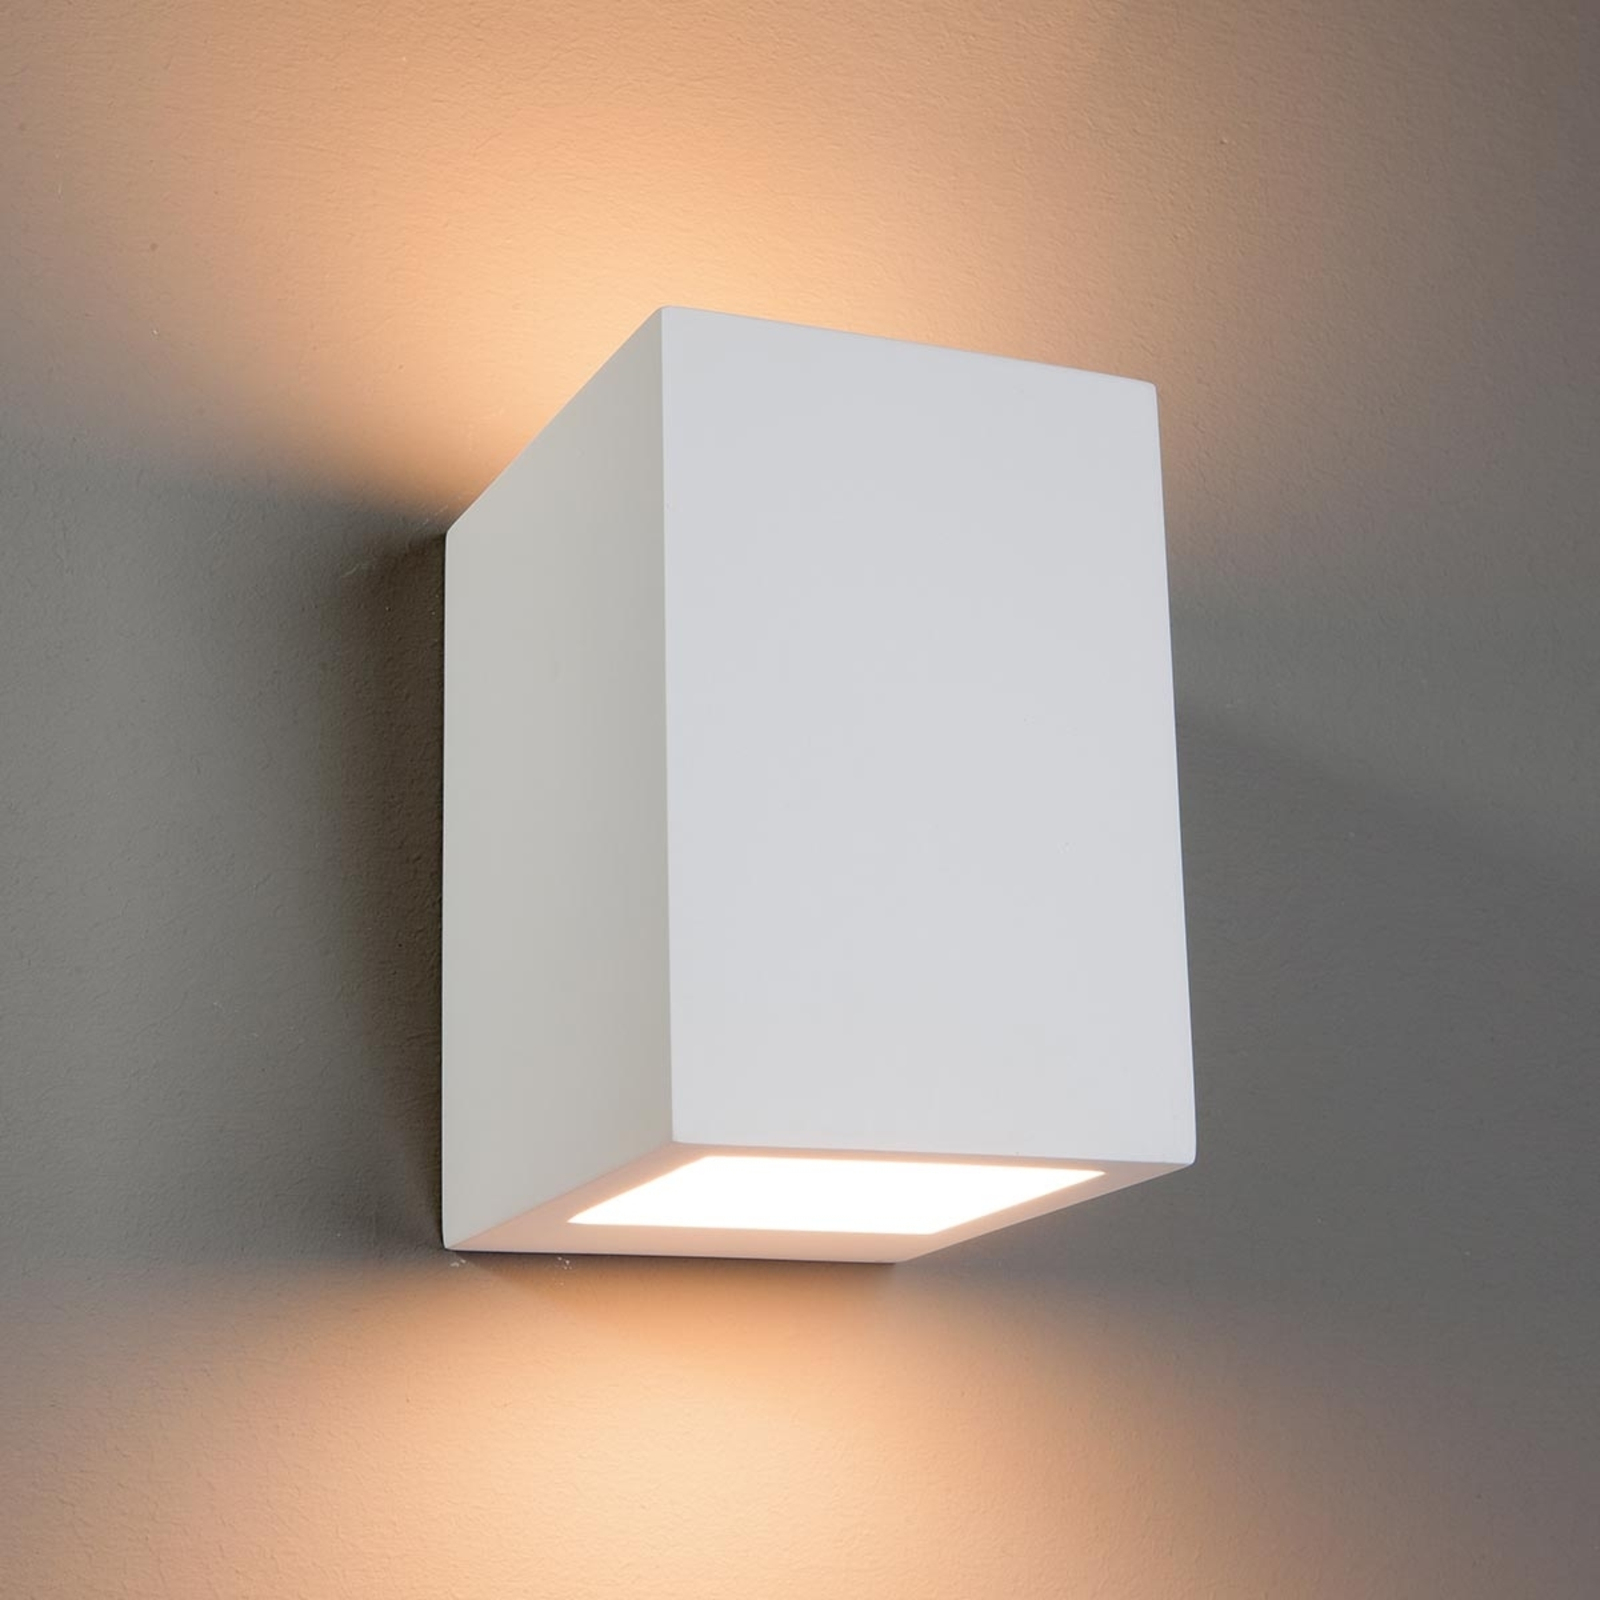 Keuze Rand Grand Zaio - hoekige halogeen wandlamp, overschilderbaar | Lampen24.be